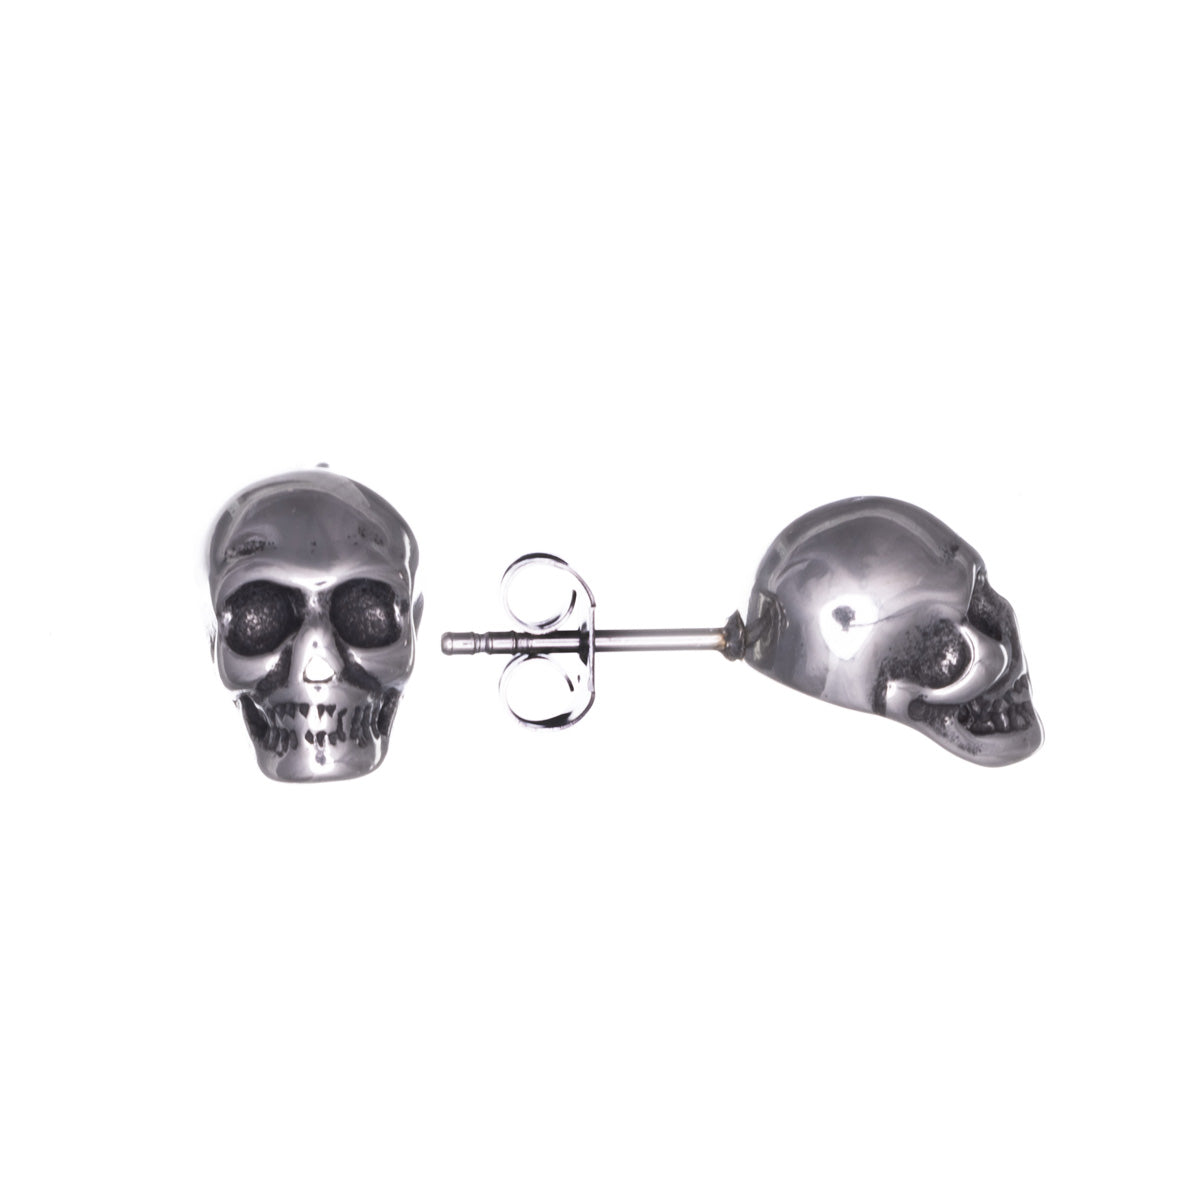 Skull steel earrings (Steel 316L)